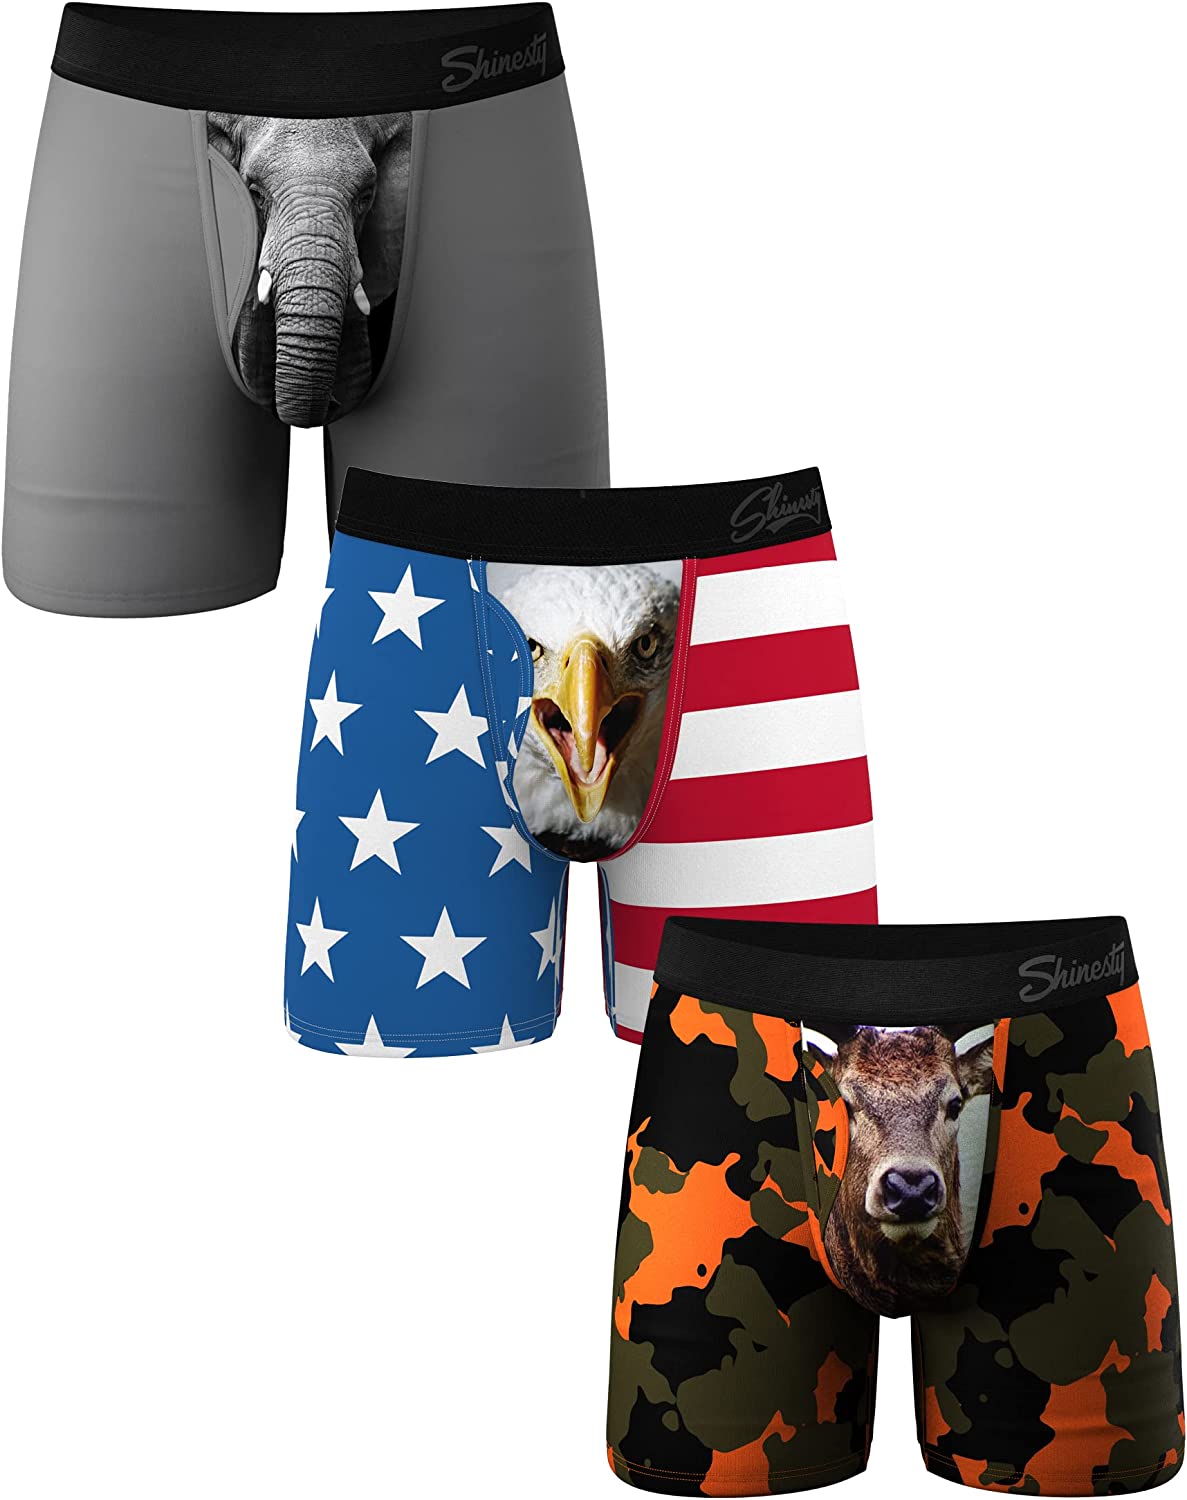 Shinesty Hammock Support Mens Underwear, Boxer Briefs Men with Fly